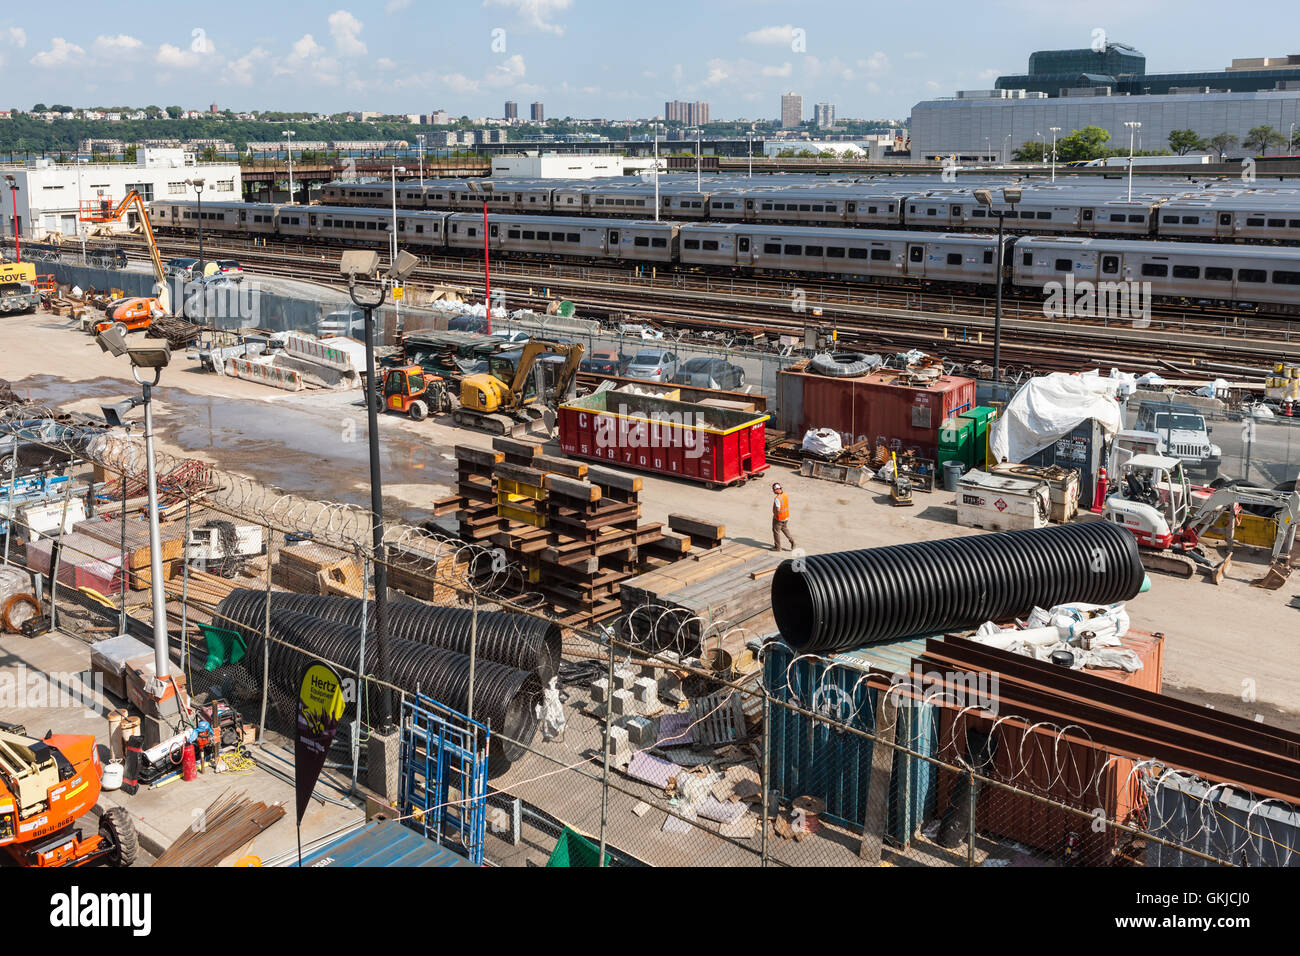 La construction d'une zone de rassemblement est adjacente à la voie ferrée à l'appui du nouveau développement d'Hudson Yards dans la ville de New York. Banque D'Images